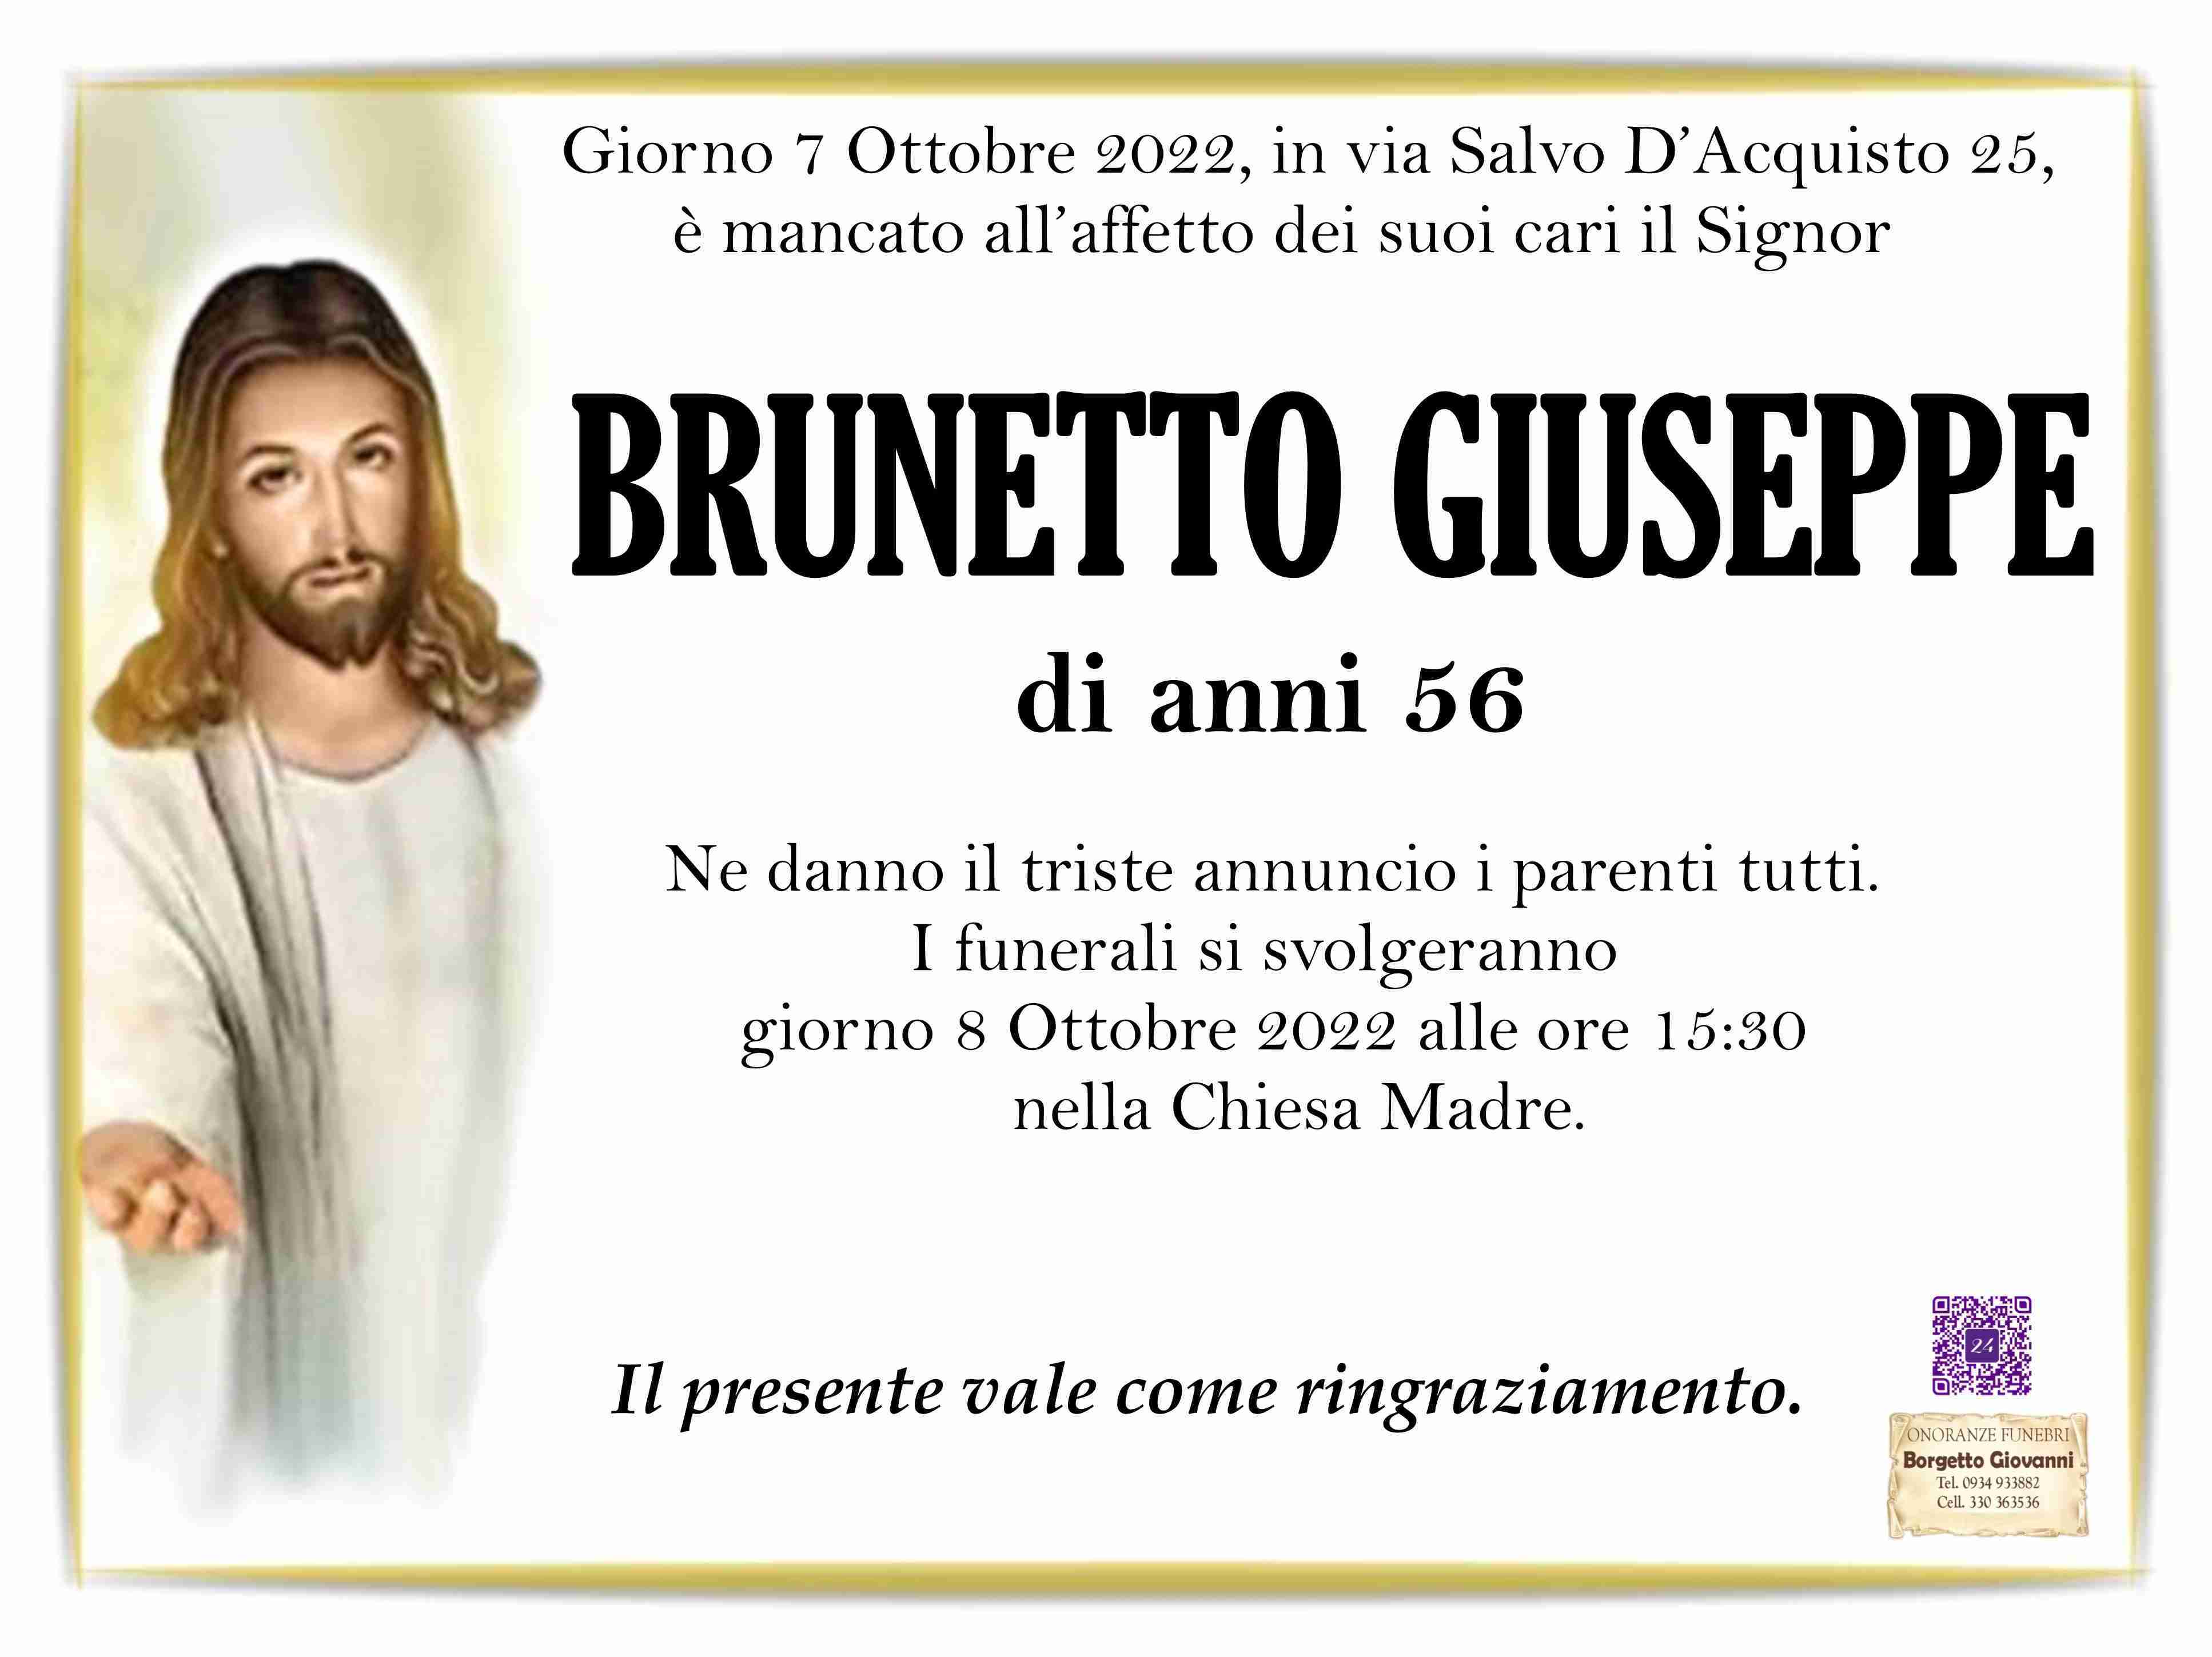 Giuseppe Brunetto